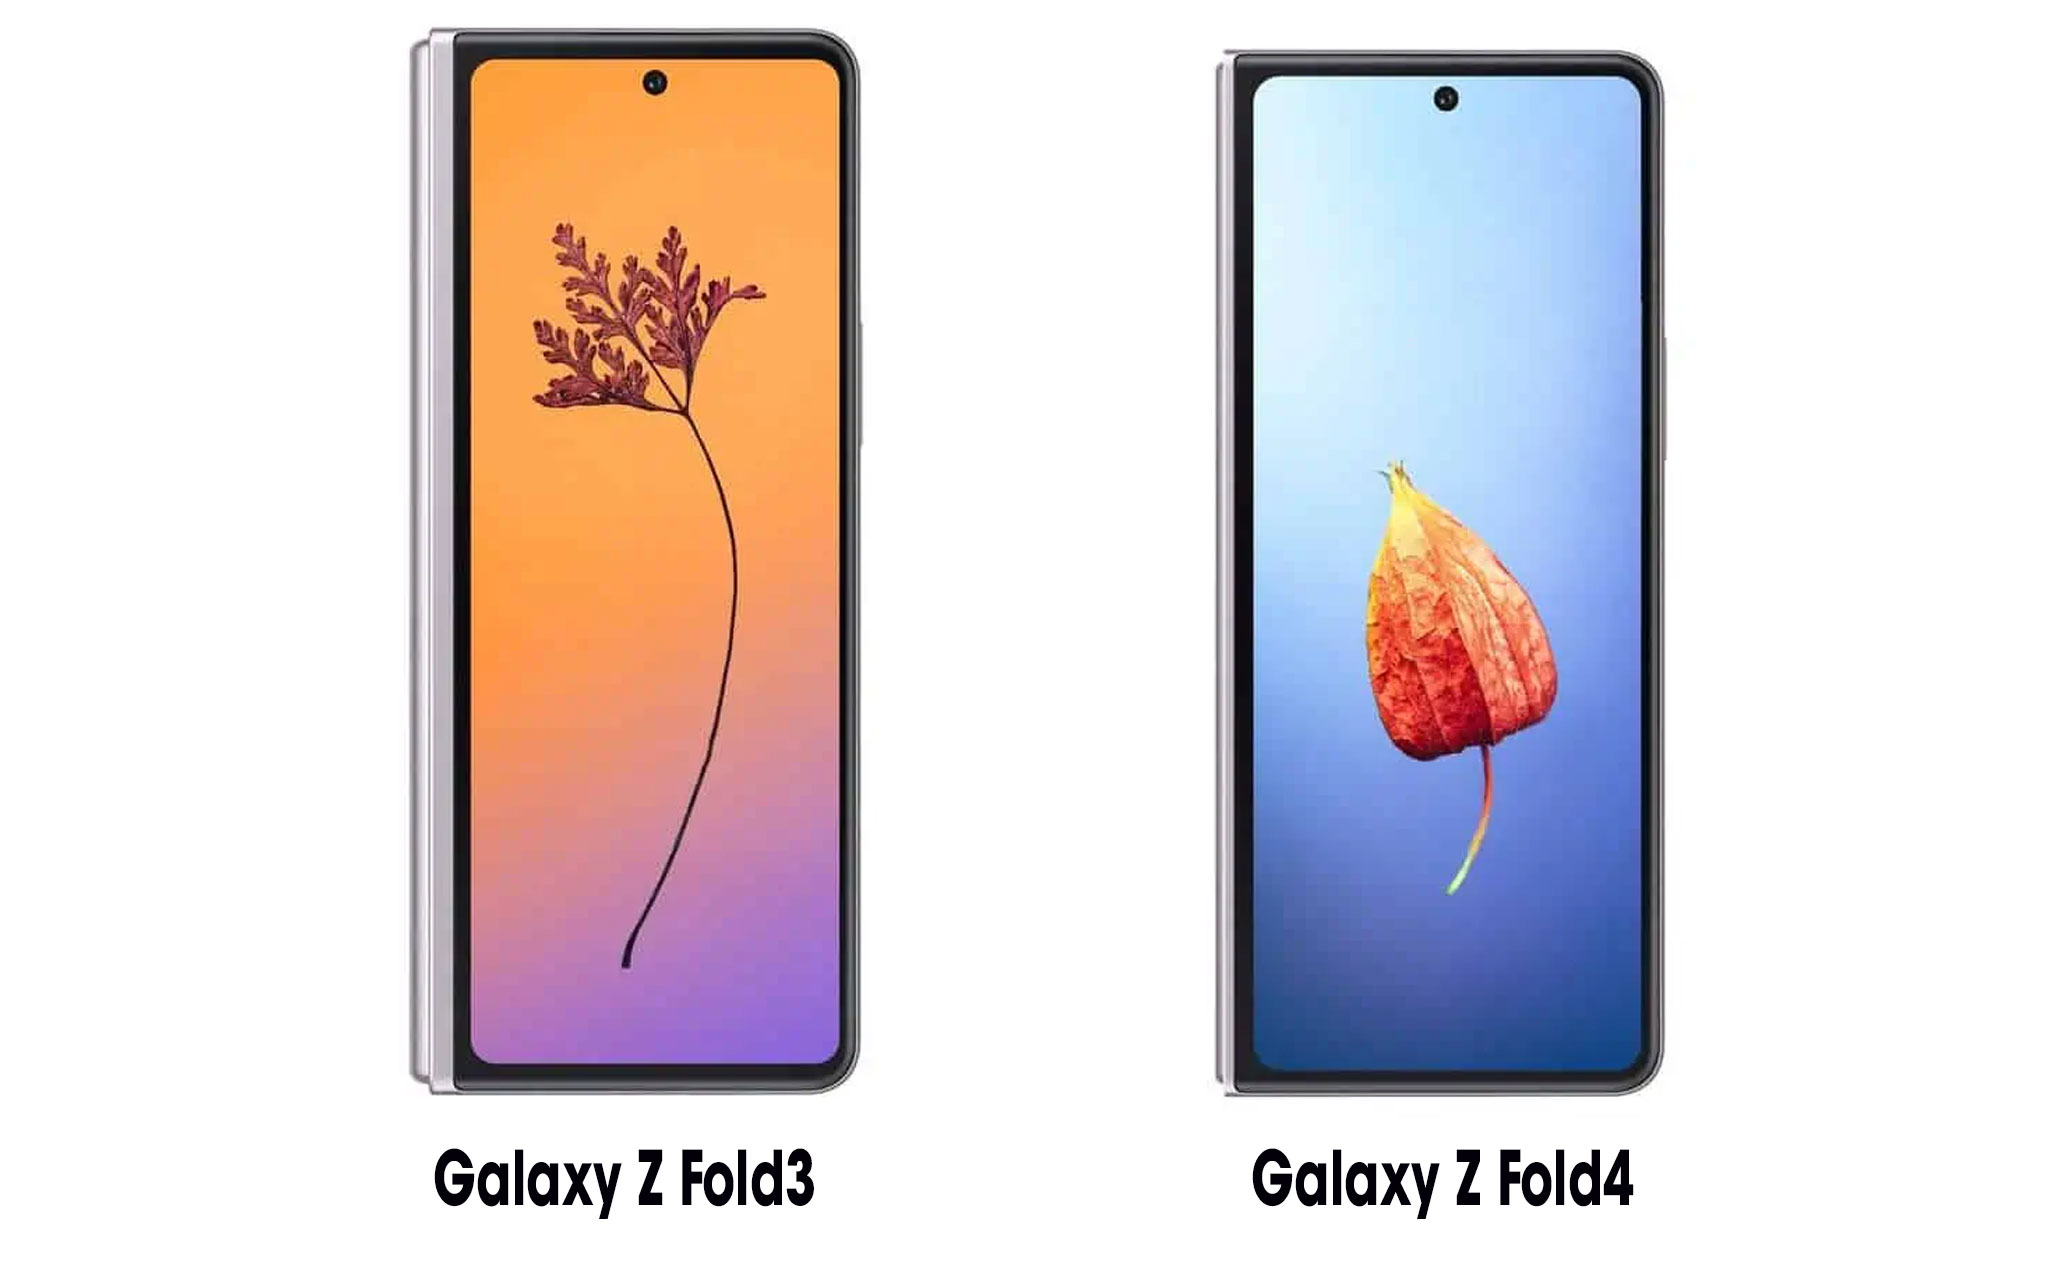 Galaxy Z Fold4 sẽ có viền thanh mảnh hơn, màn hình rộng hơn